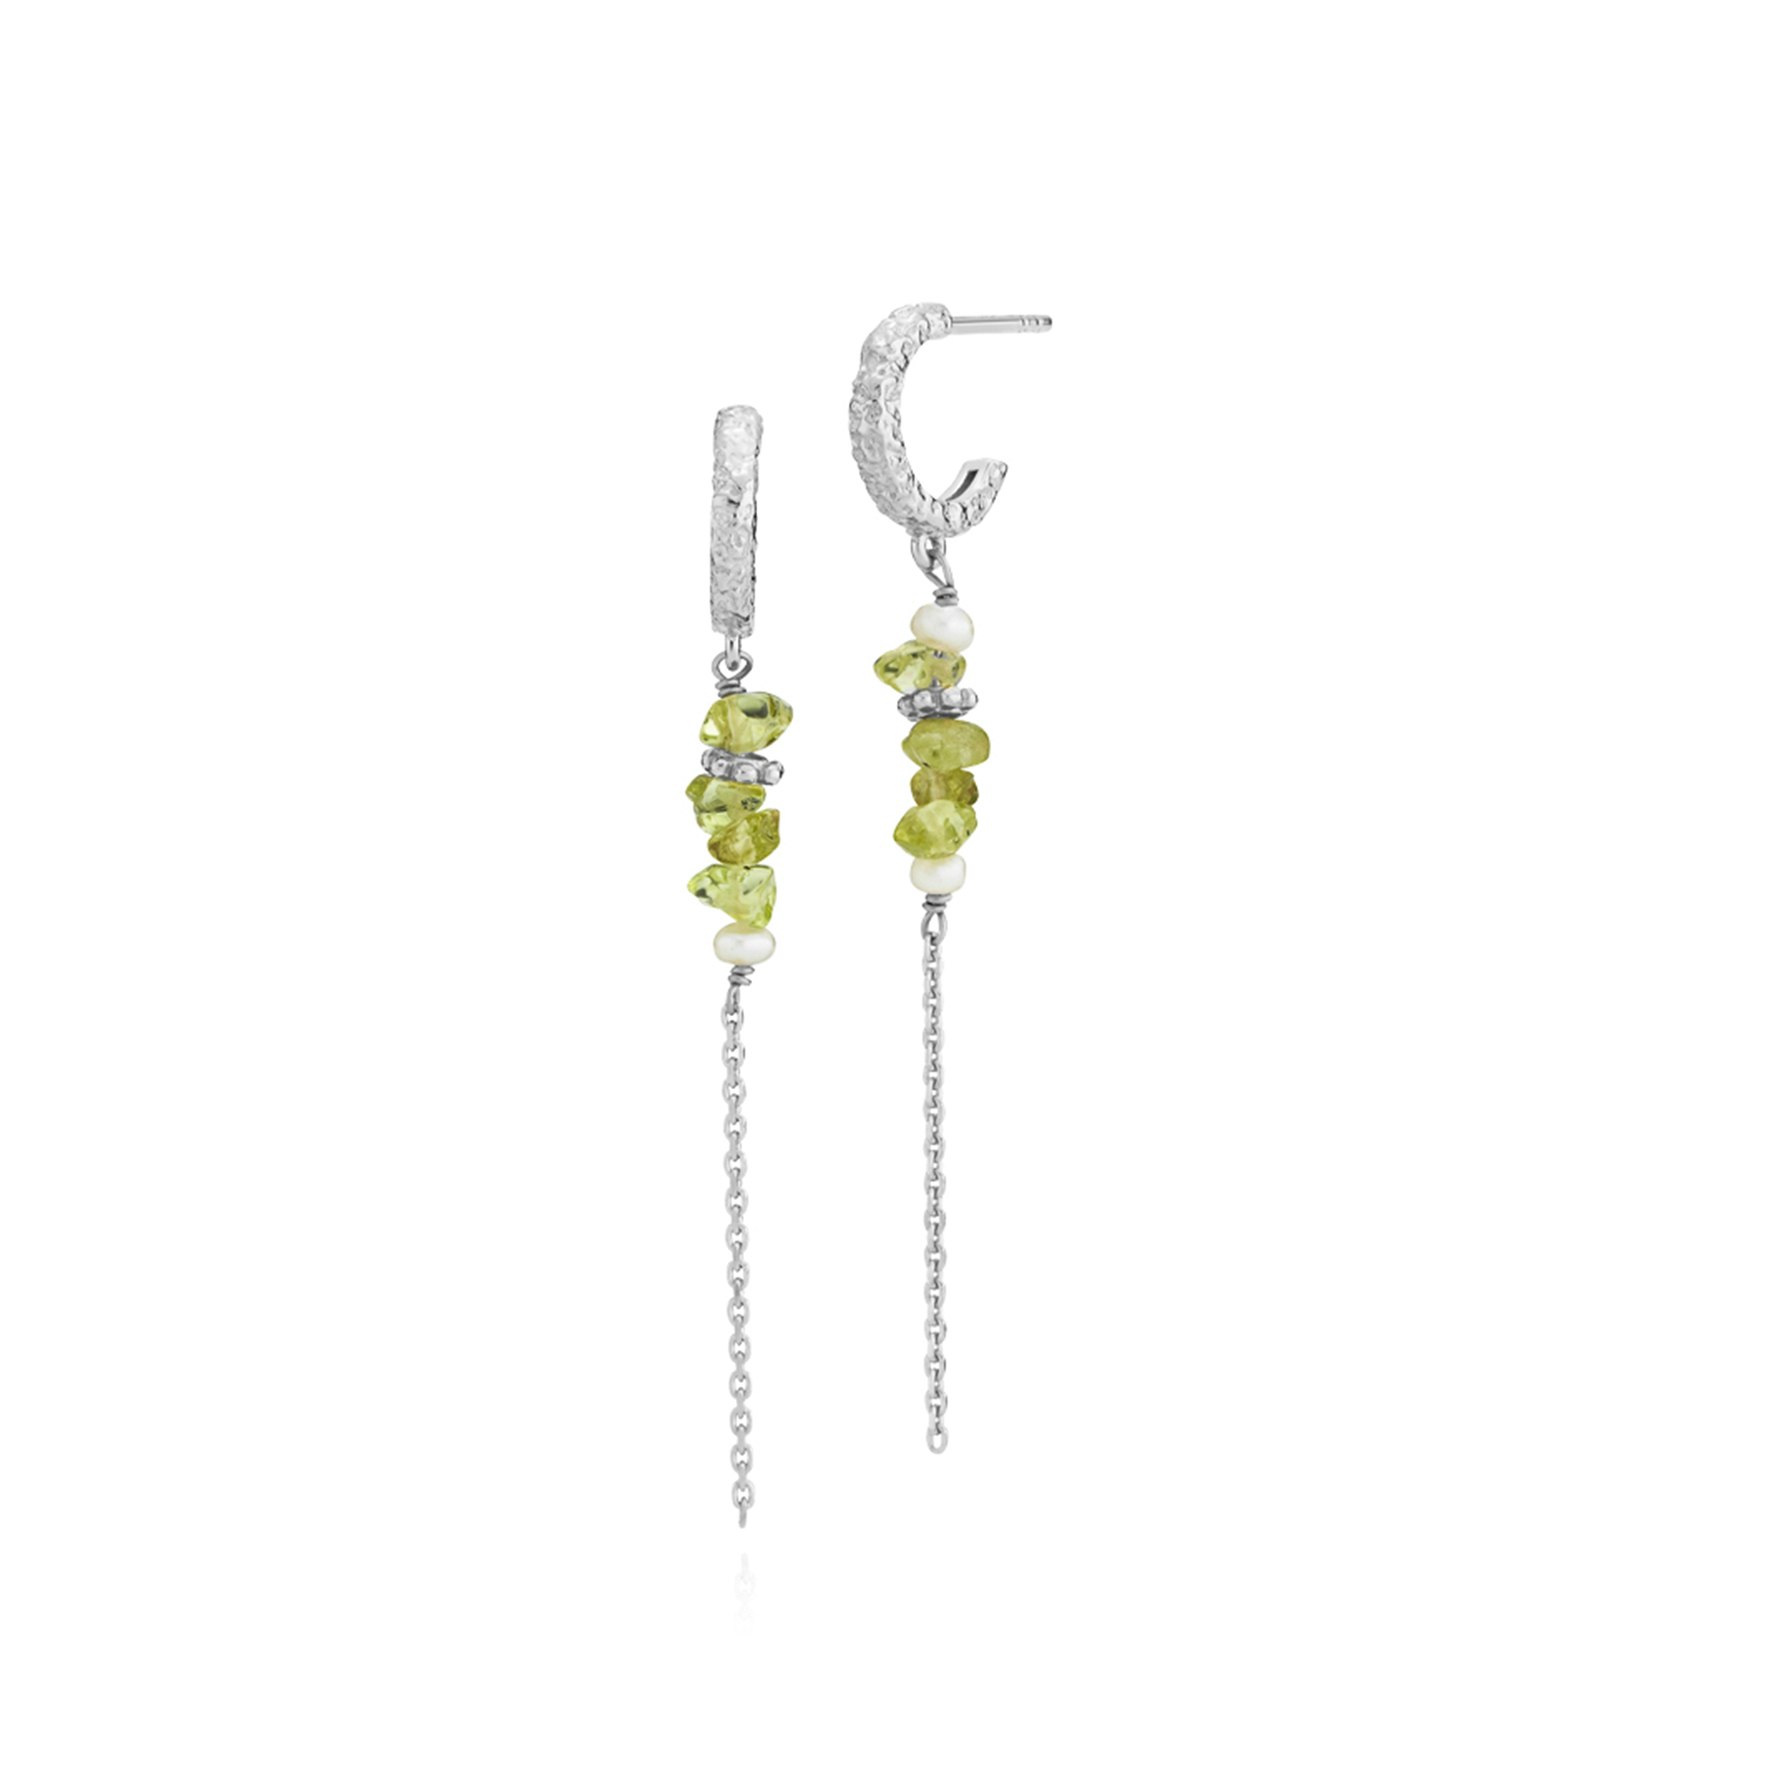 Beach Green Earrings fra Sistie i Sølv Sterling 925